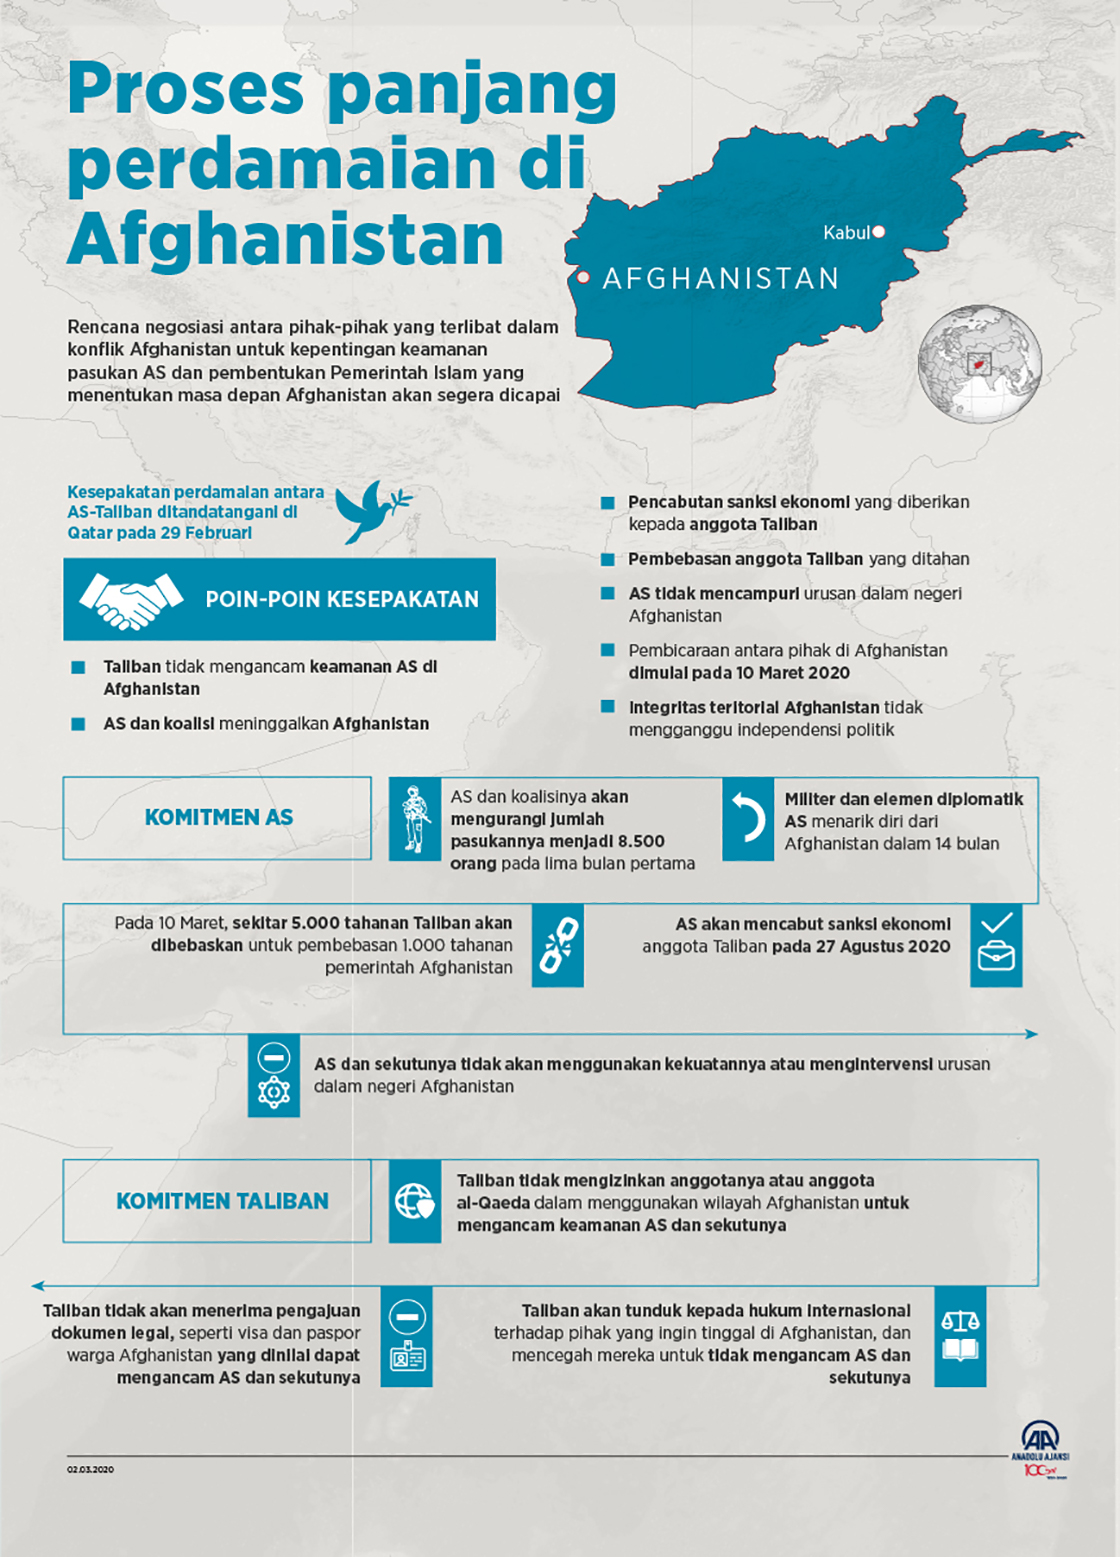 Proses panjang perdamaian di Afghanistan 